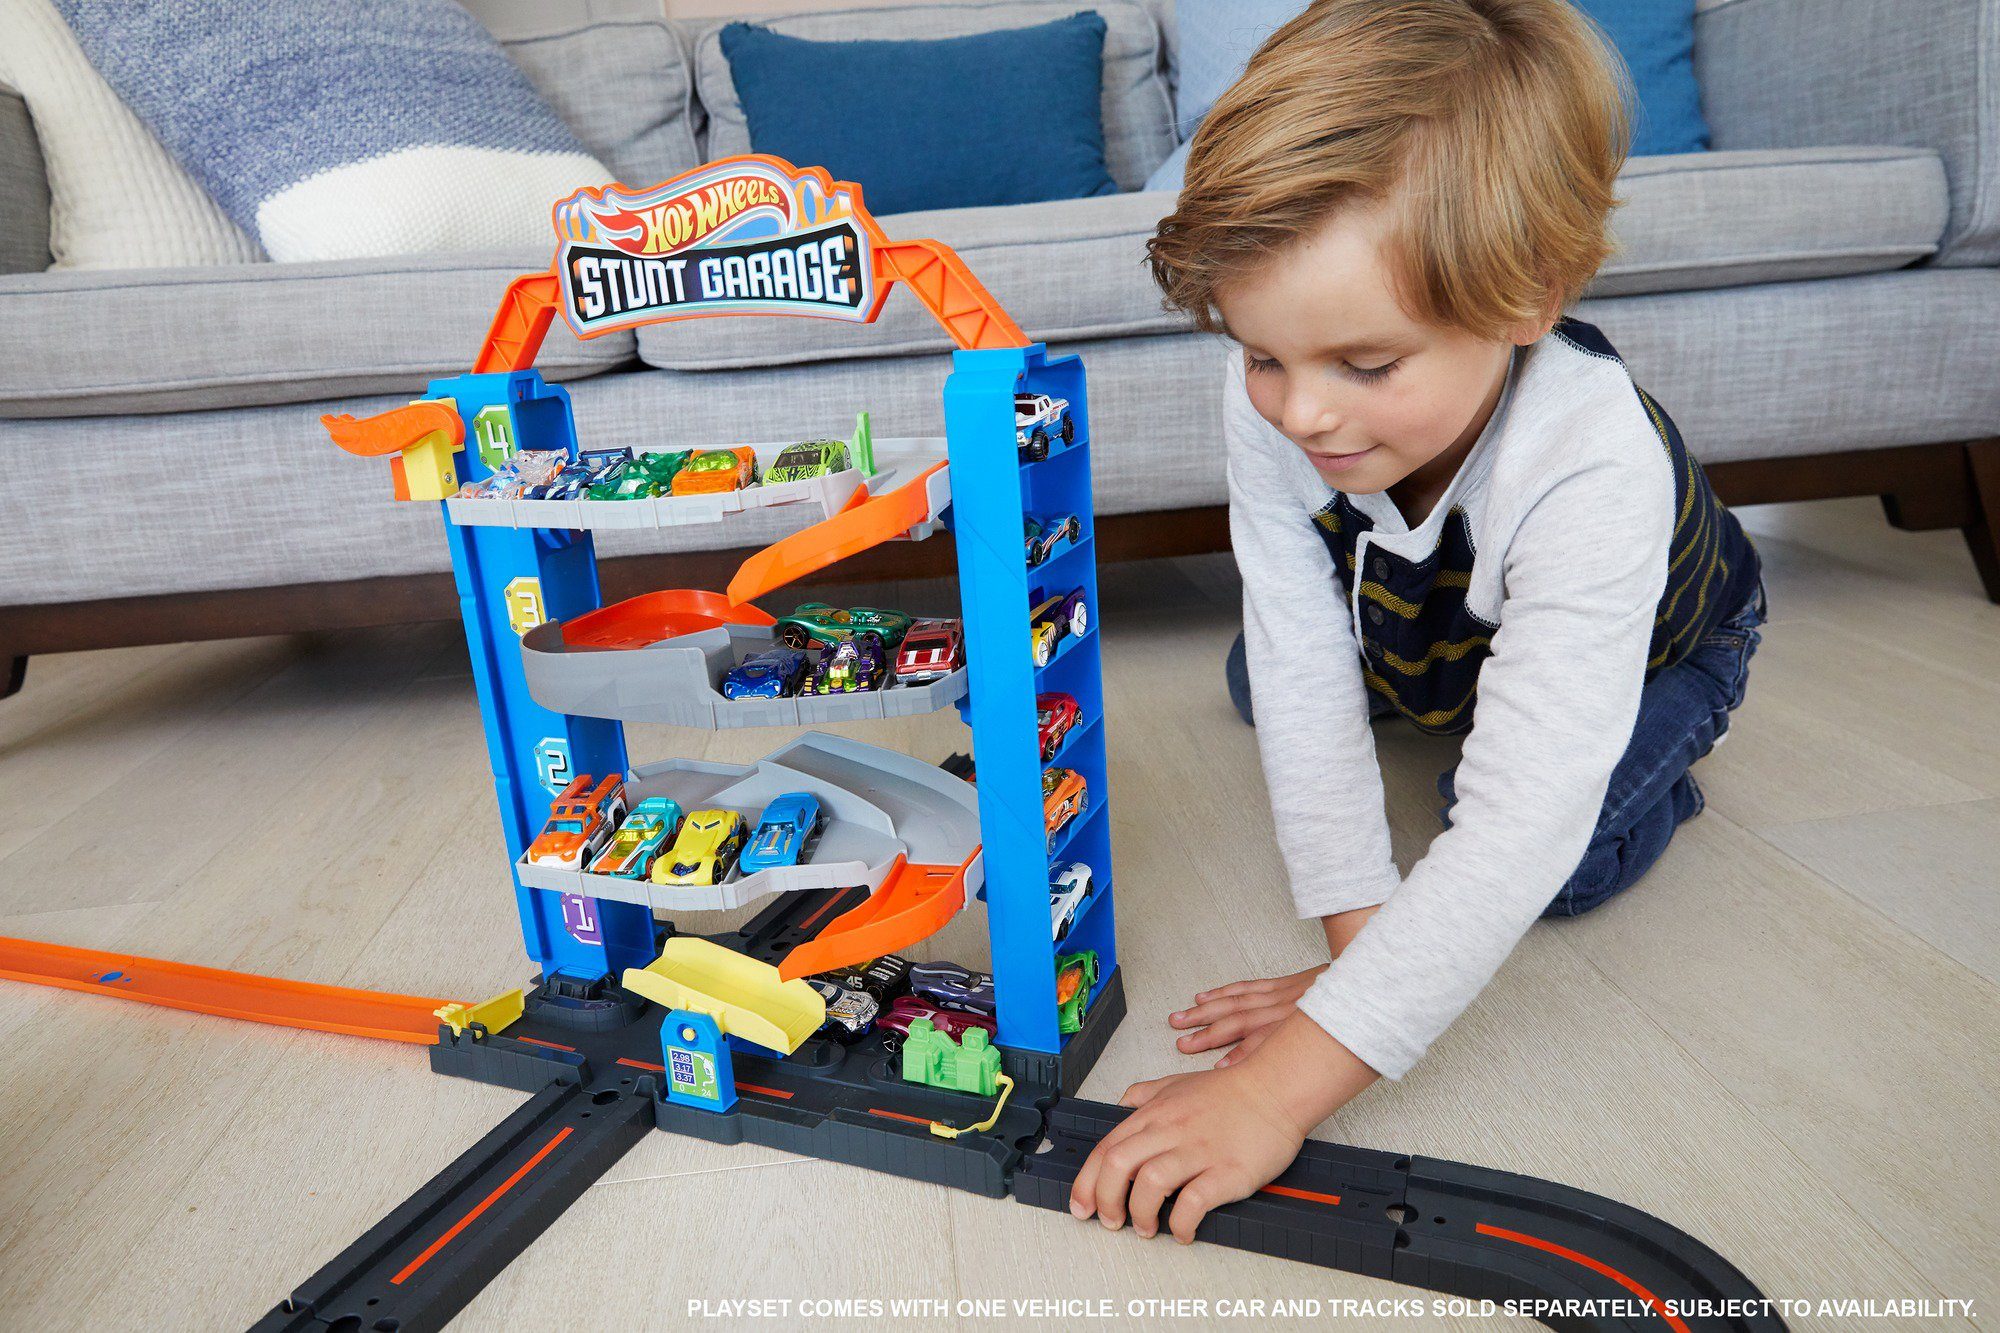 Mattel® Hot Wheels Spiel-Parkgarage Stunt-Garage Spielzeugauto Parkhaus, inklusive 1 Spielset